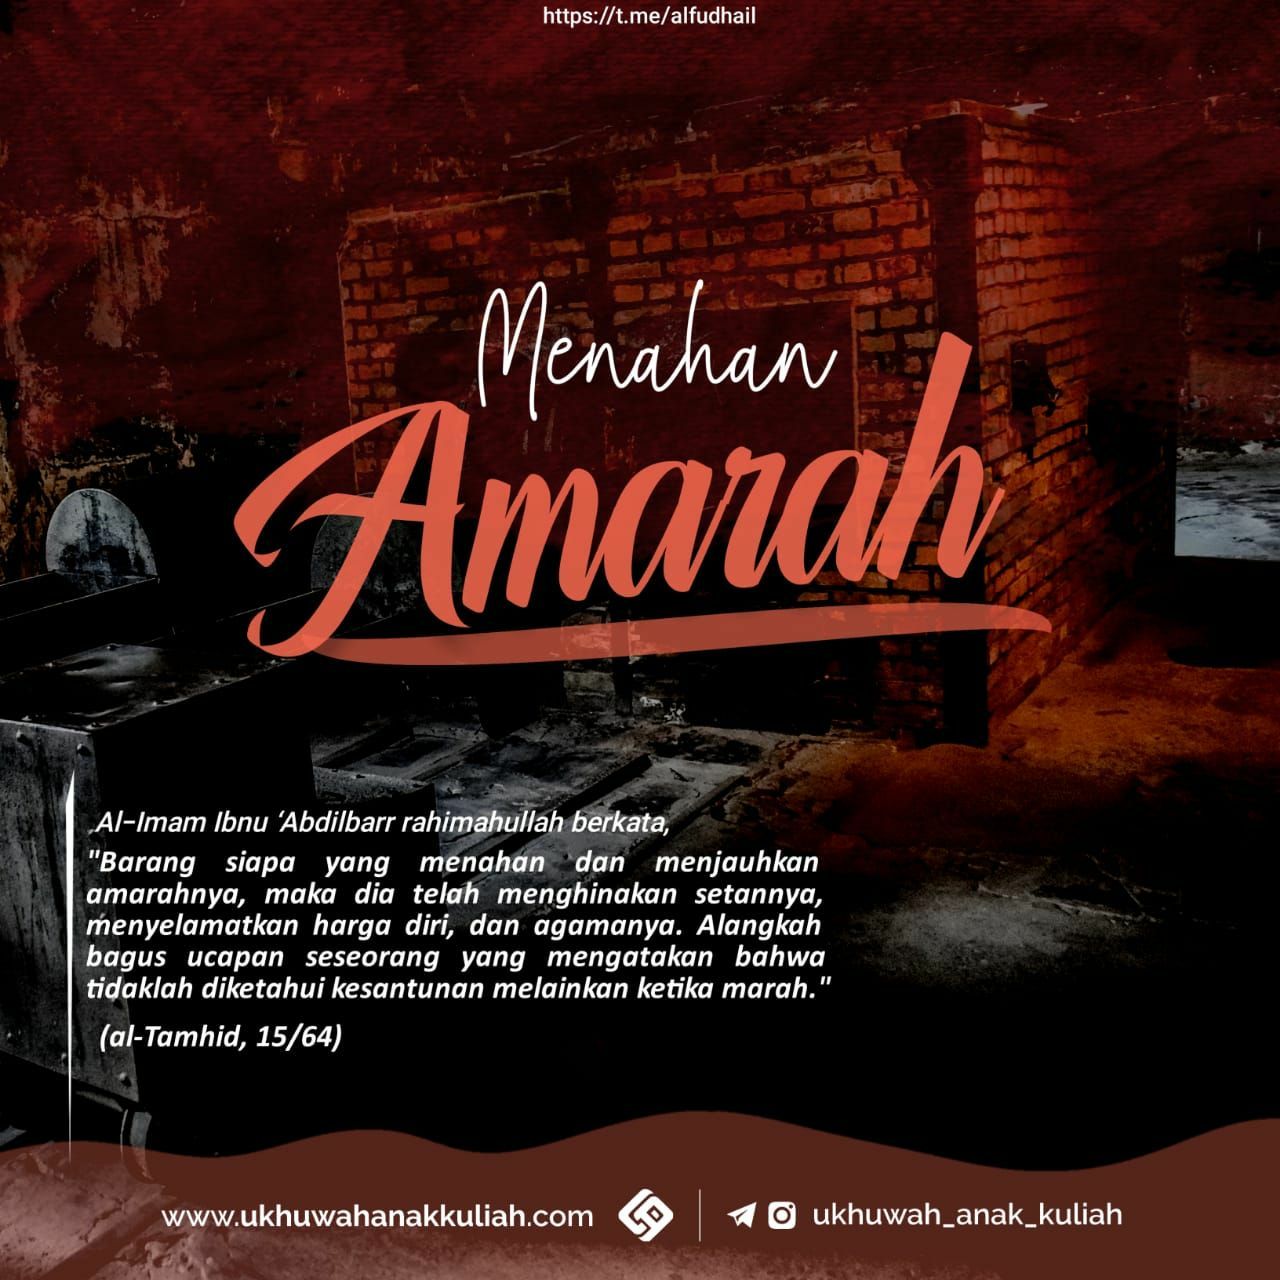 MENAHAN AMARAH